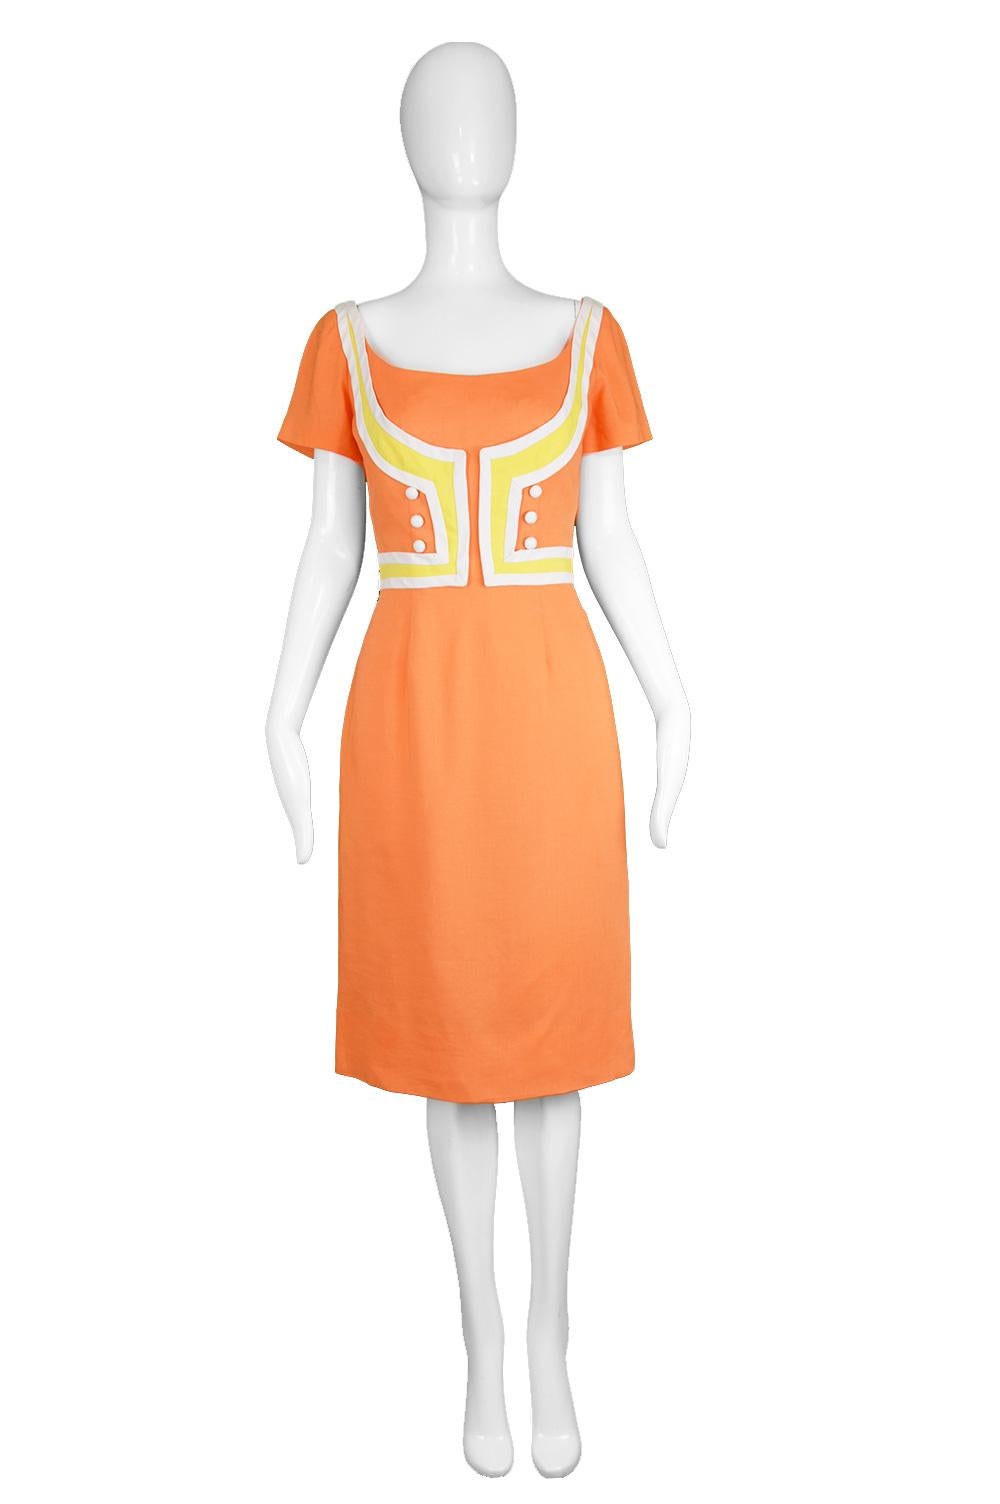 Oleg Cassini Vintage Orange, White & Yellow Linen Short Sleeve Mod Dress, 1960s

Estimated Size: UK 8-10/ US 4-6/ EU 36-38. Click 'Continue Reading' to check measurements and description. 
Bust - 34” / 86cm
Waist - 26” / 66cm
Hips - 36” /